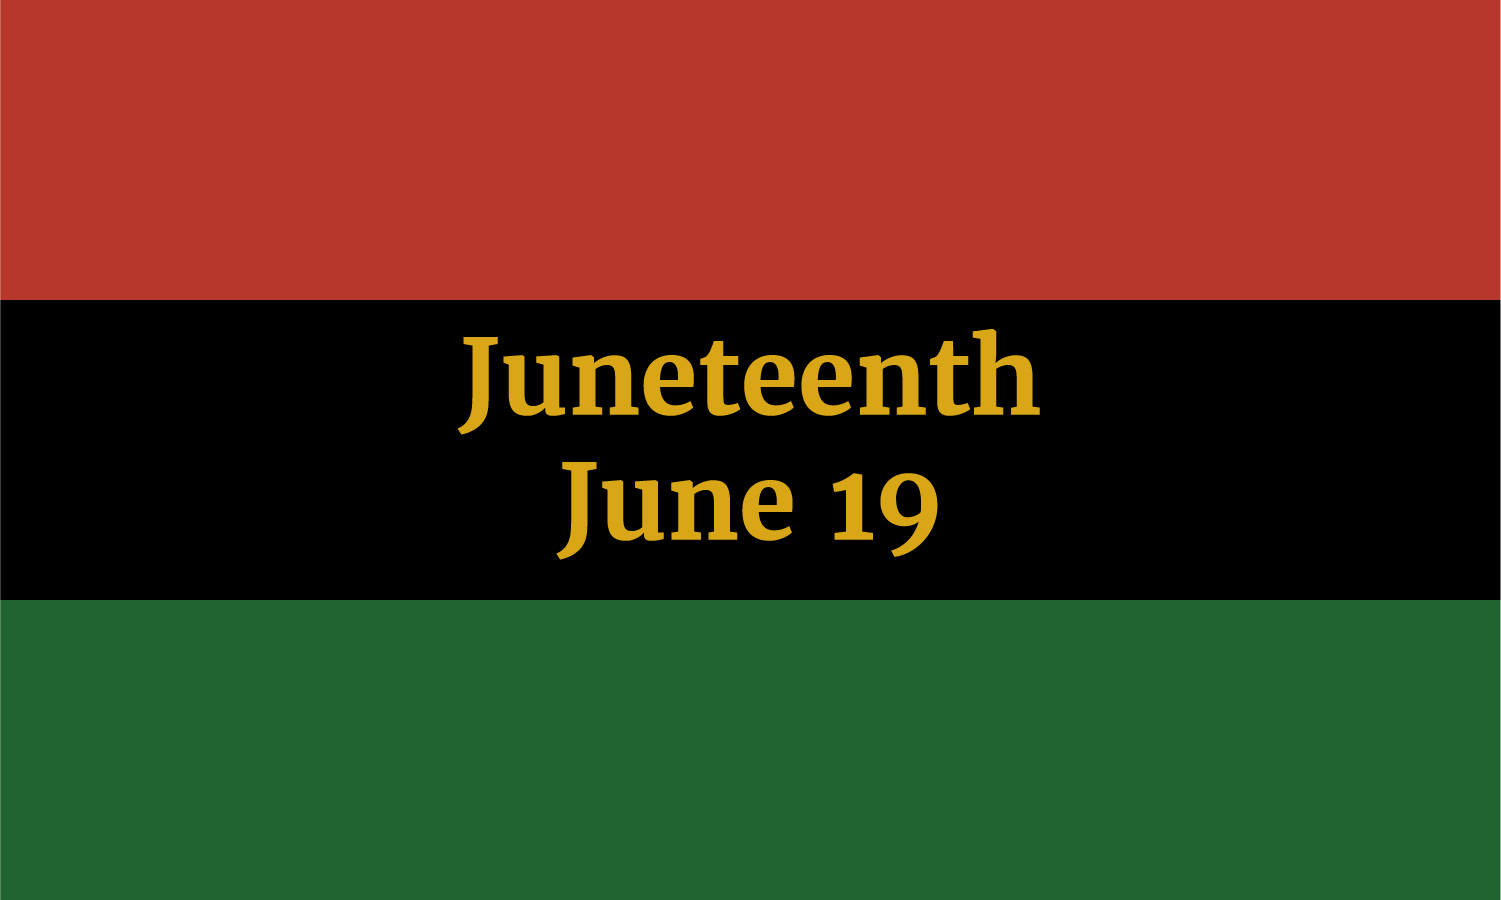 Juneteenth June 19